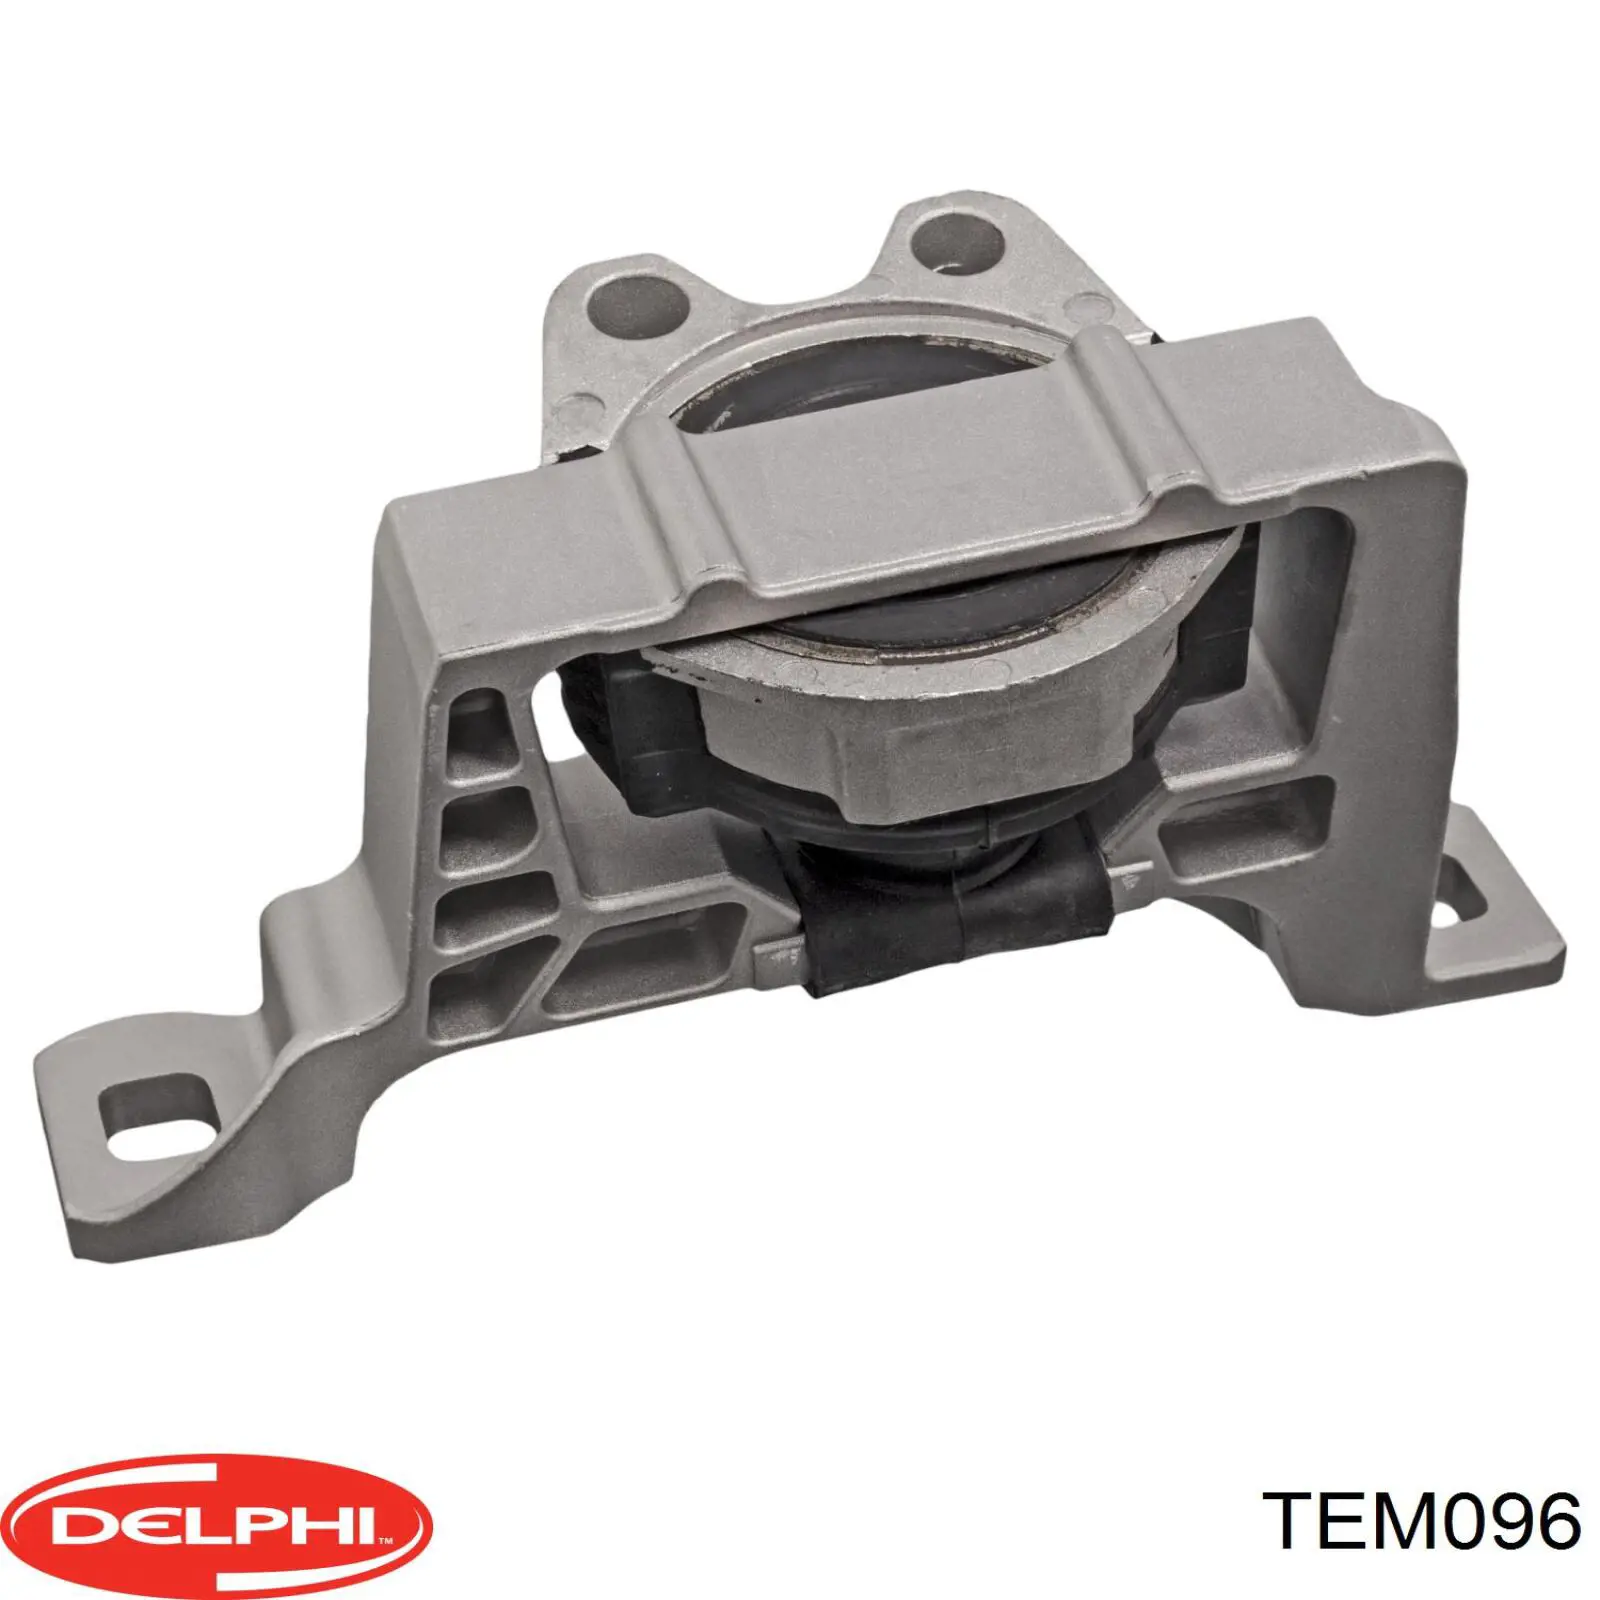 TEM096 Delphi soporte de motor derecho